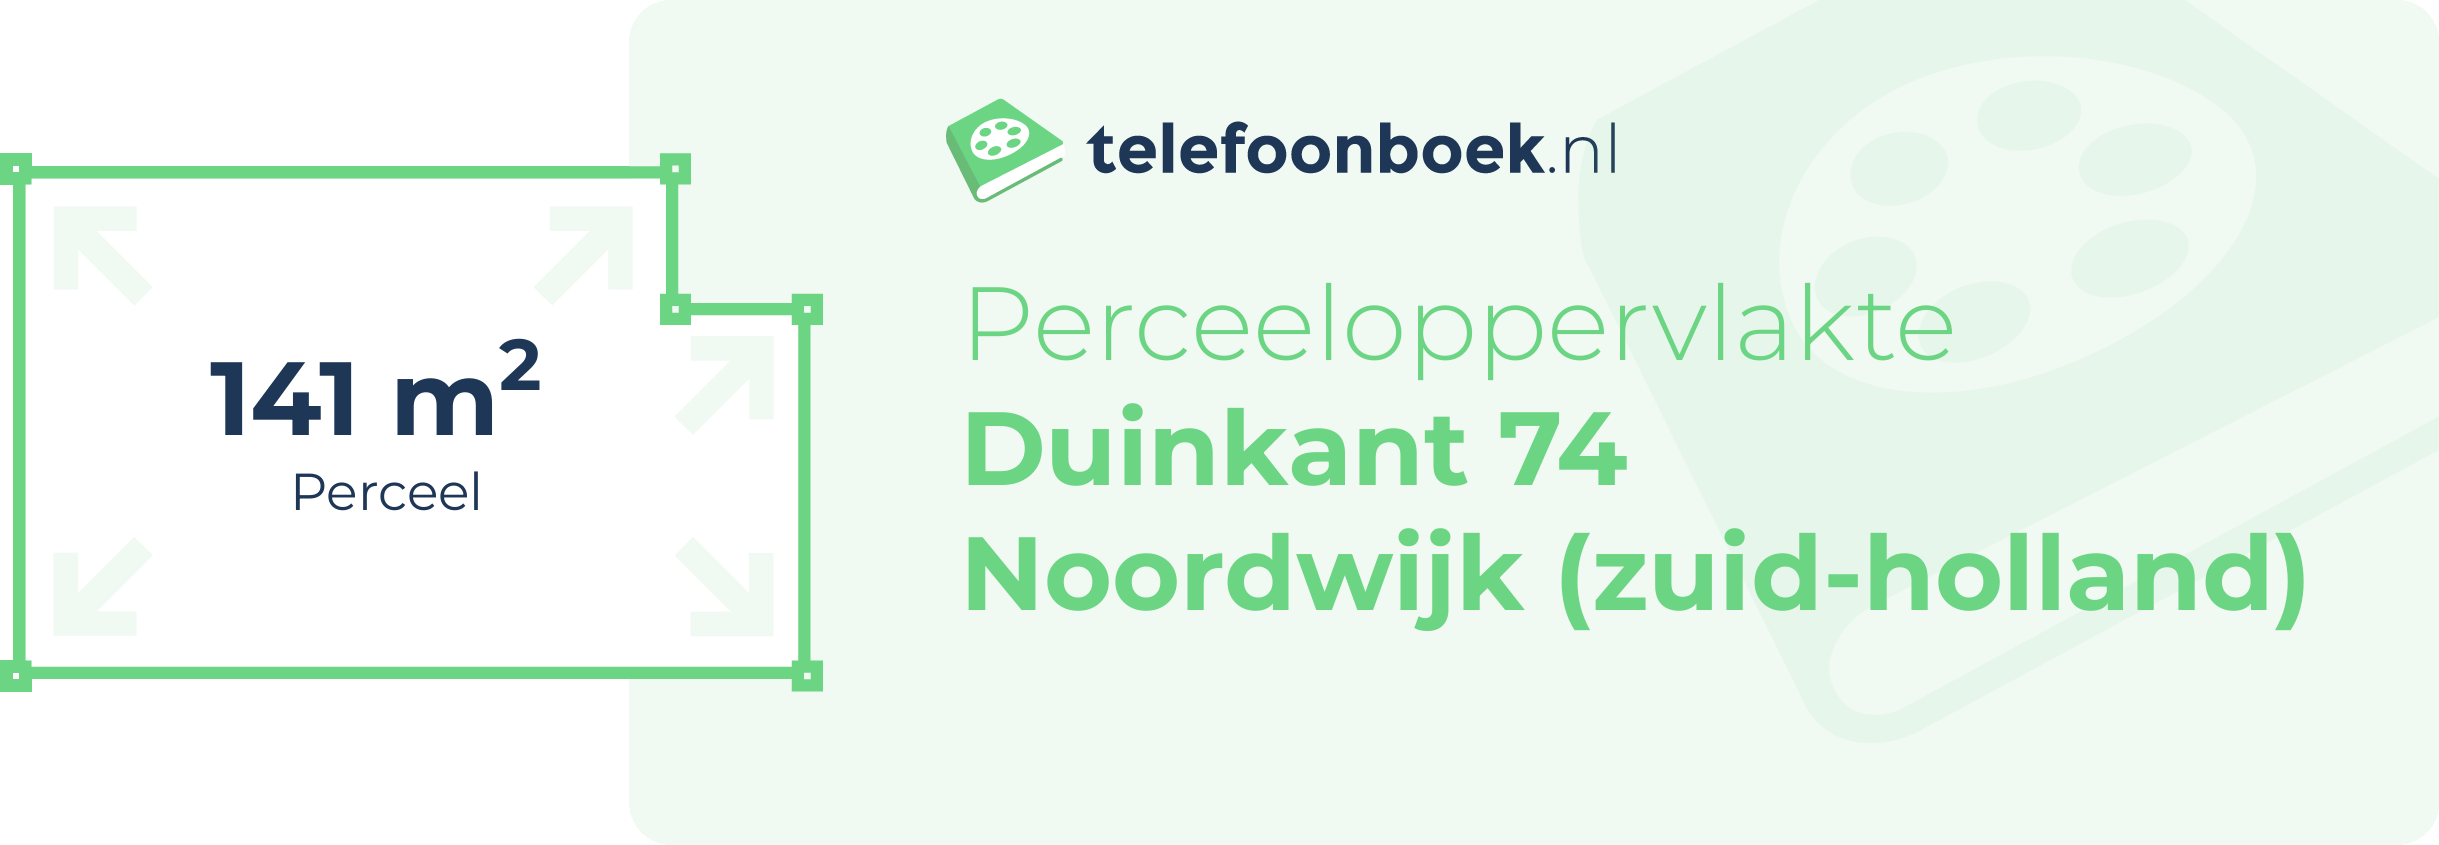 Perceeloppervlakte Duinkant 74 Noordwijk (Zuid-Holland)